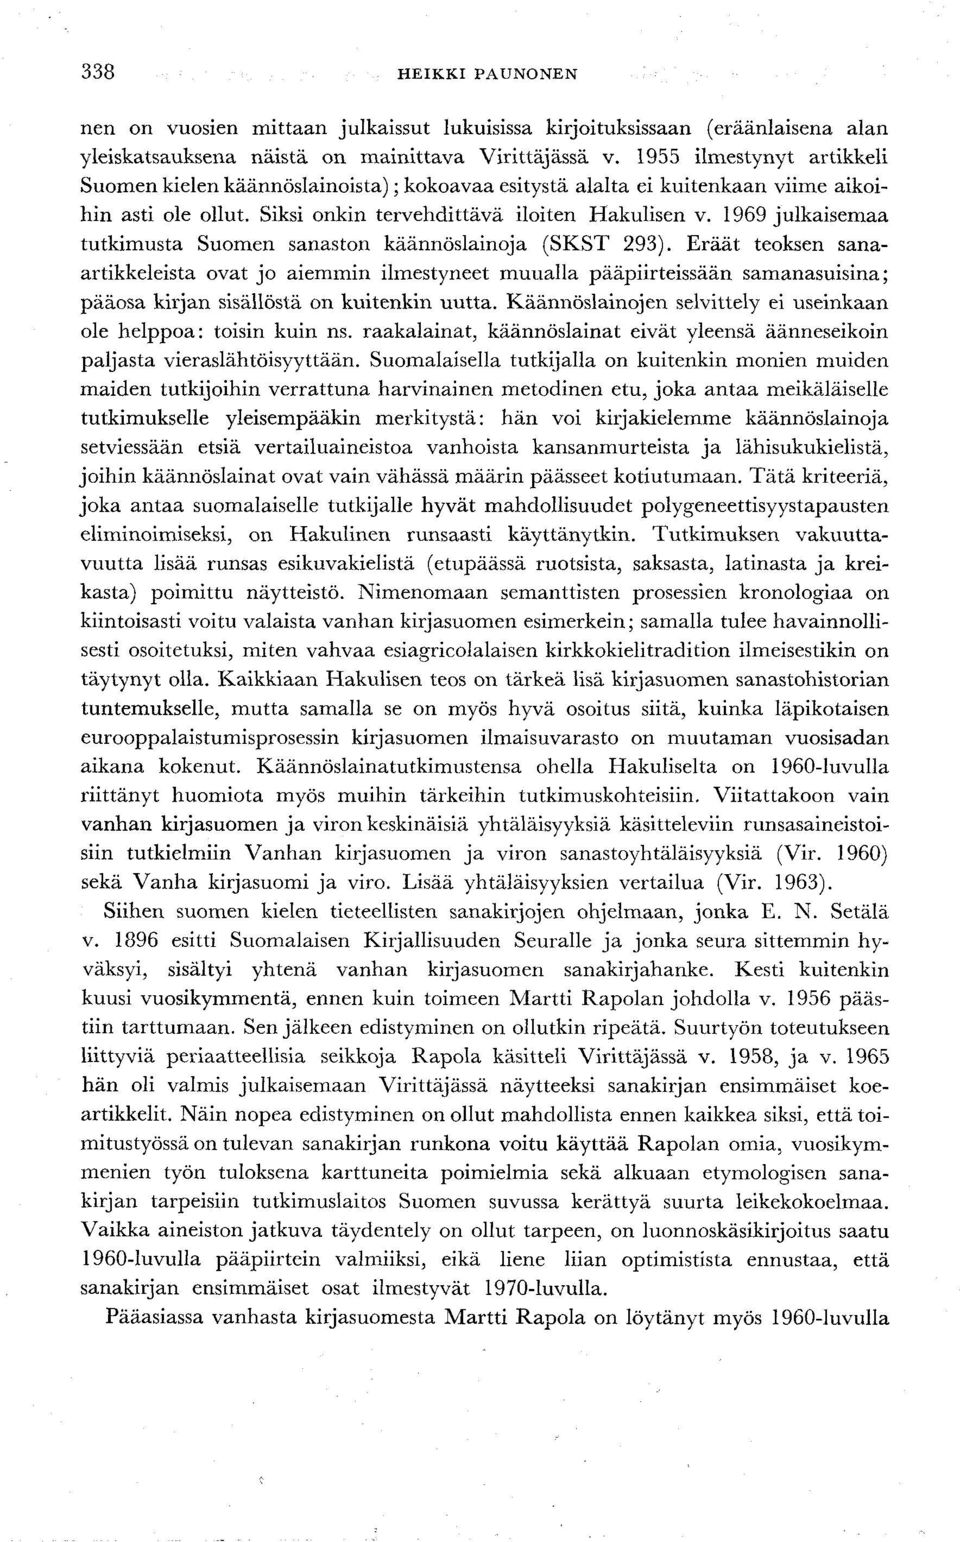 1969 julkaisemaa tutkimusta Suomen sanaston käännöslainoja (SKST 293).